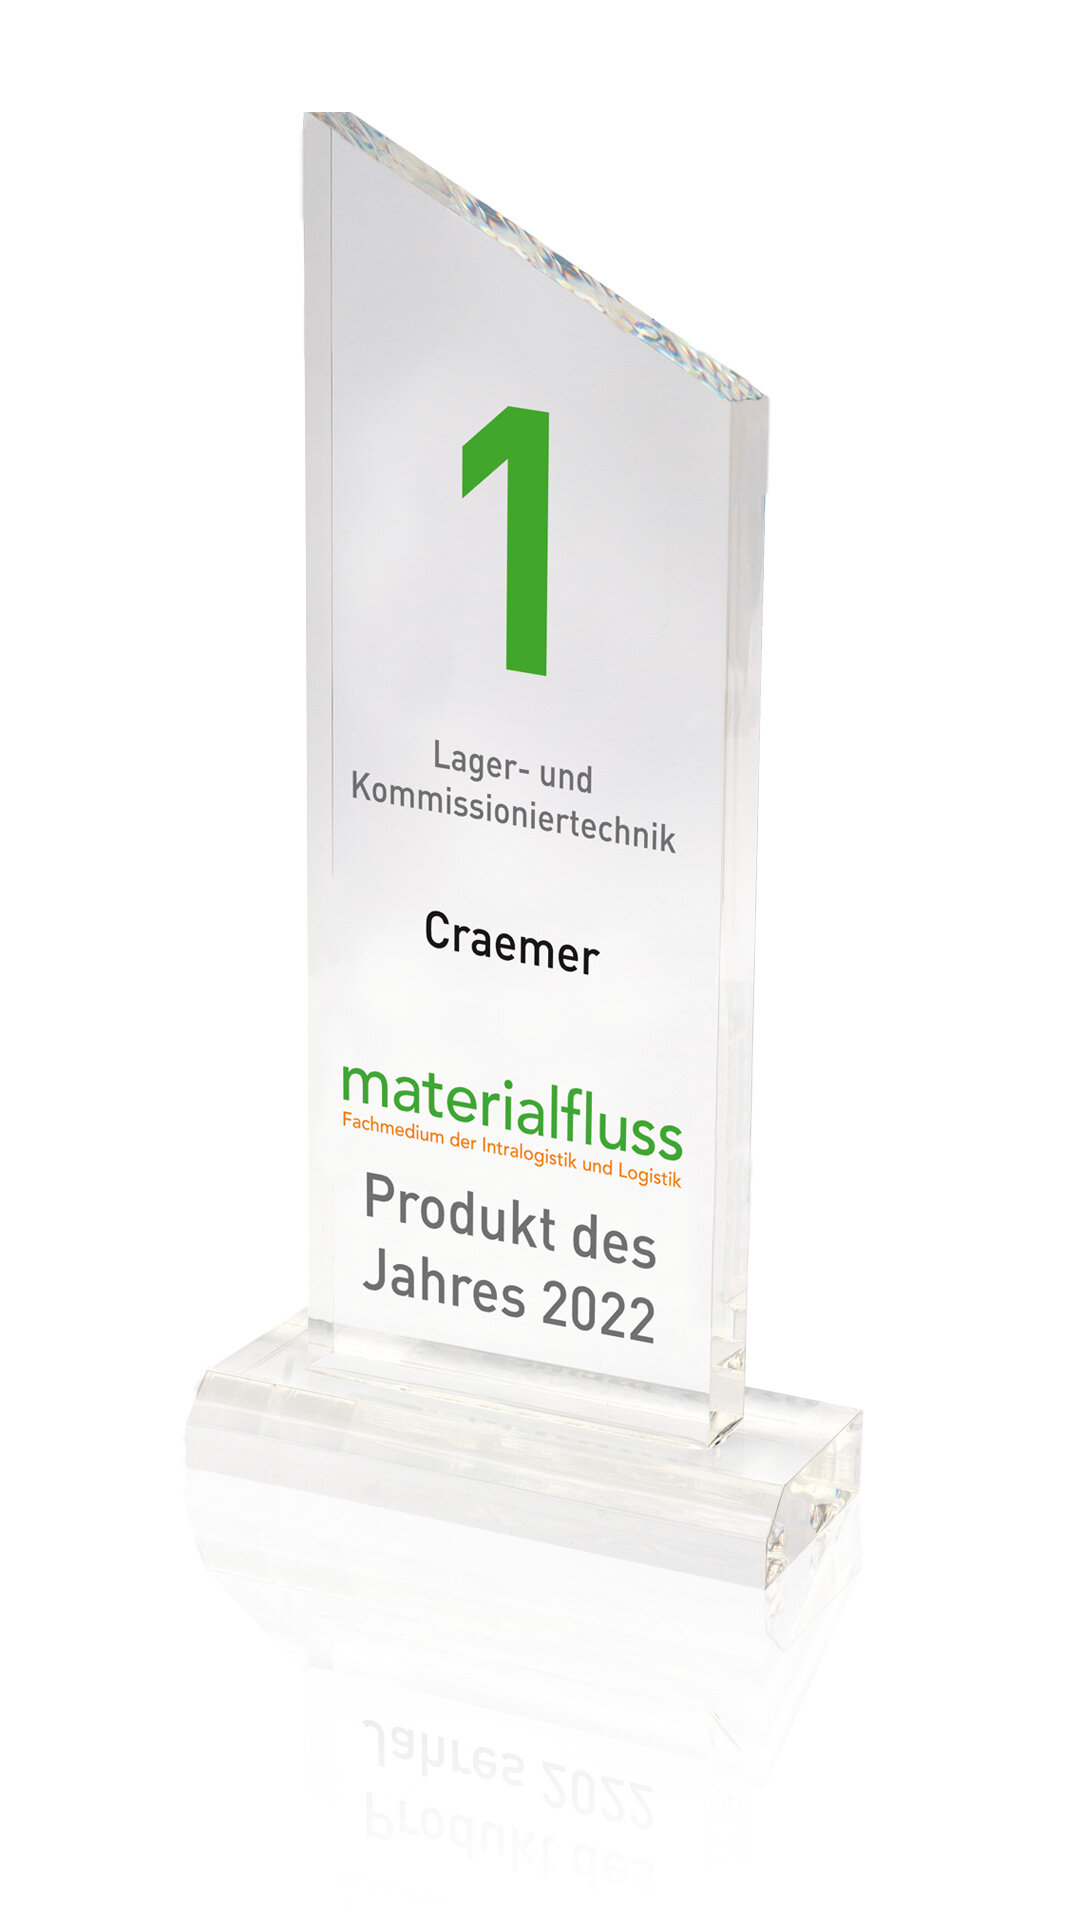 Craemer Award Materialfluss